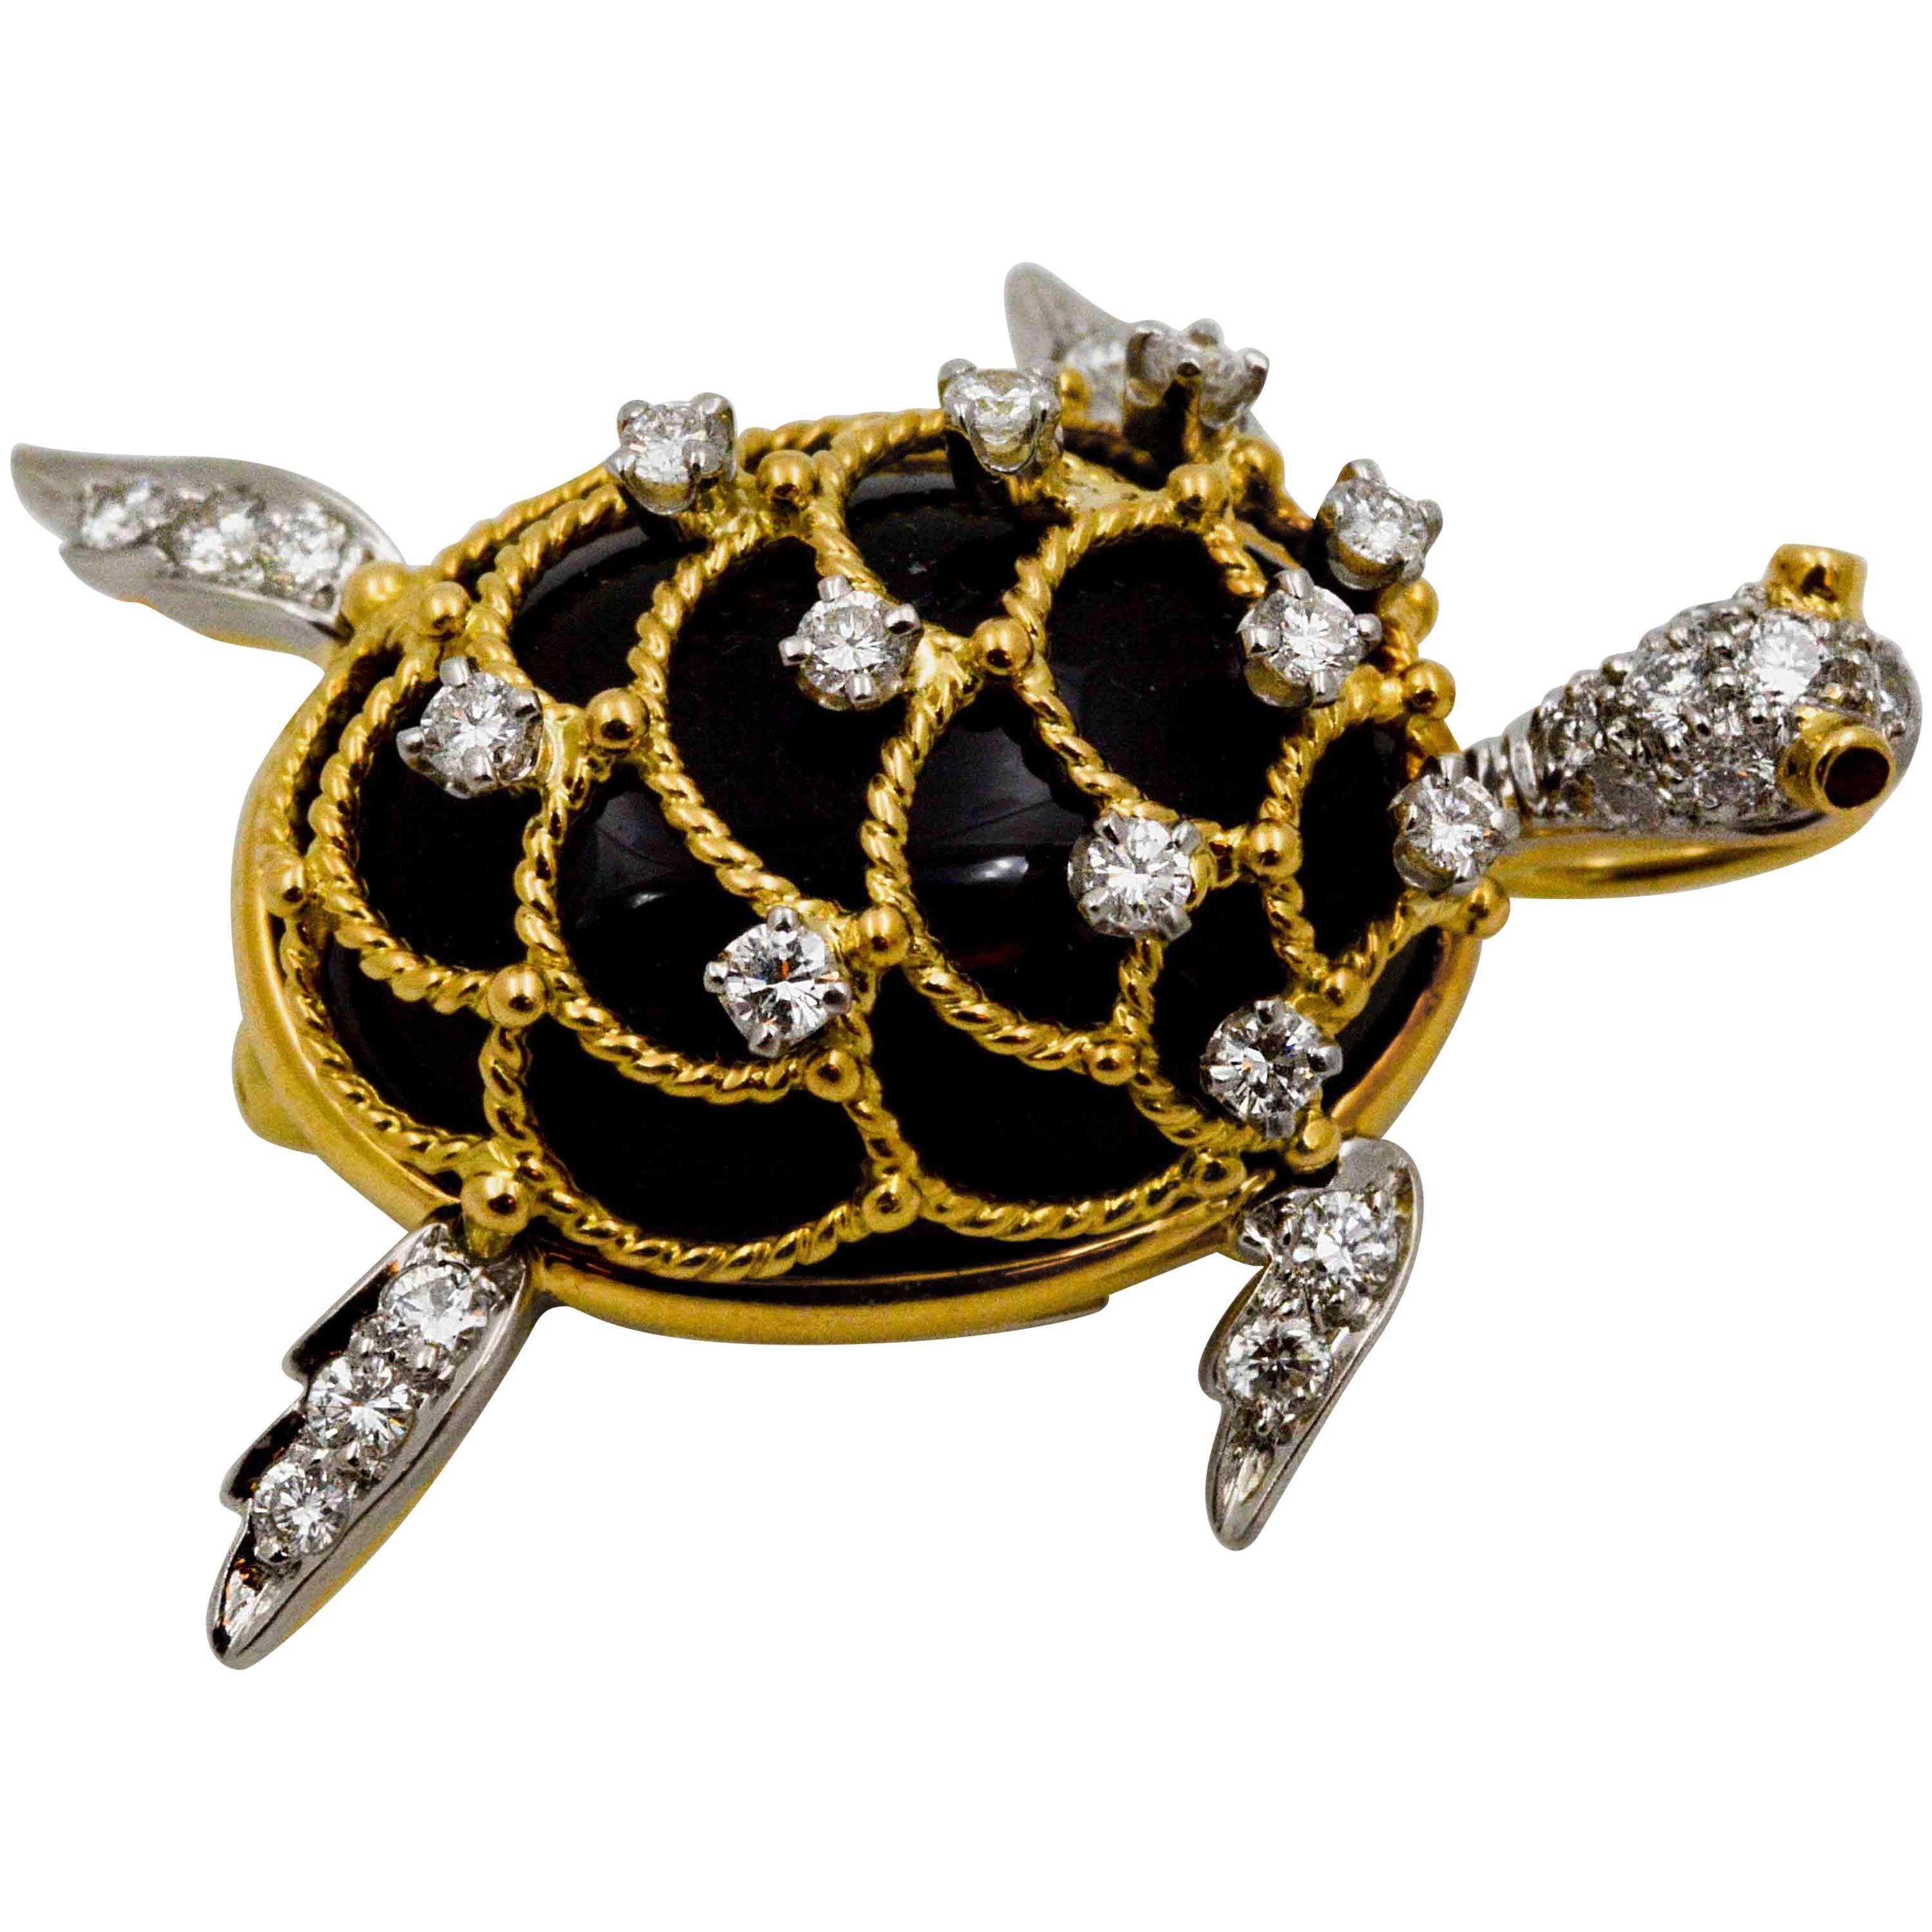 Hammerman Brothers Gold Sea Turtle Pendant